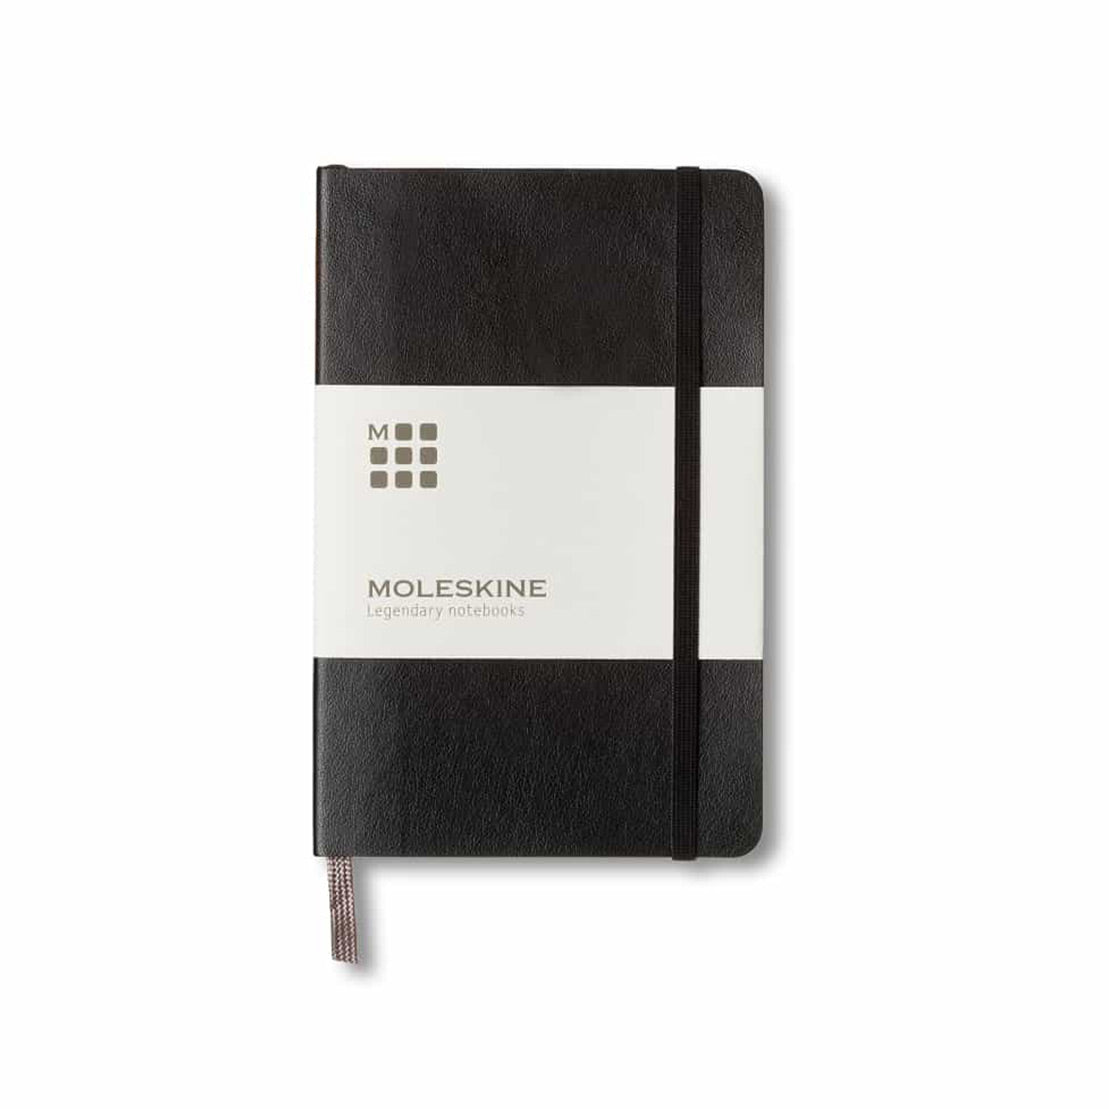 Moleskine Pocket Notebook Hard Cover Ruled Black